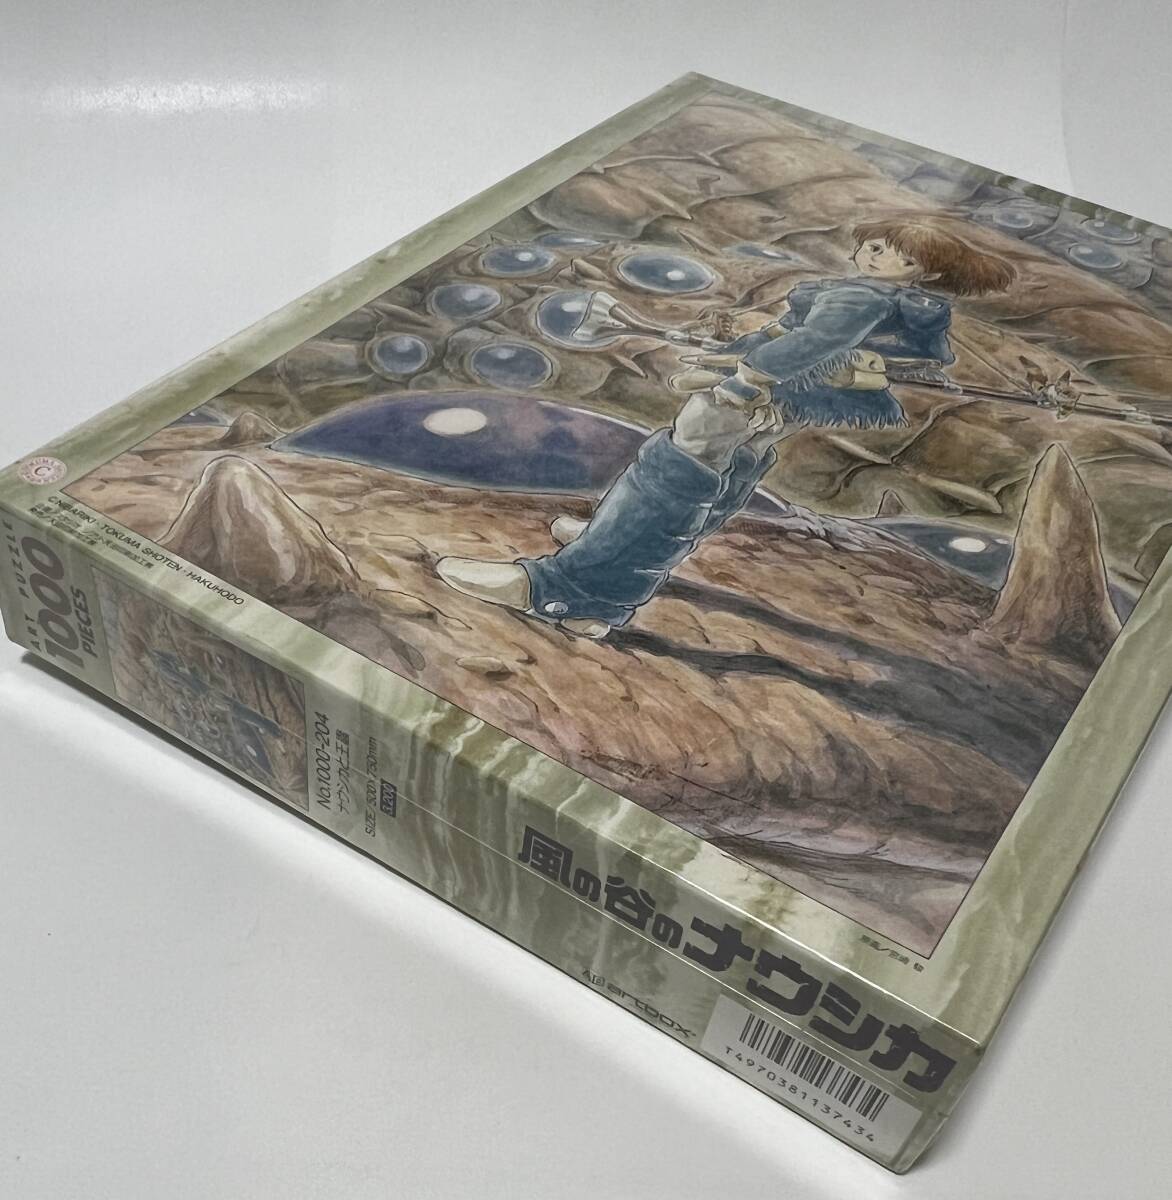  нераспечатанный товар искусство box Studio Ghibli Kaze no Tani no Naushika Nausicaa ... составная картинка 1000 деталь 